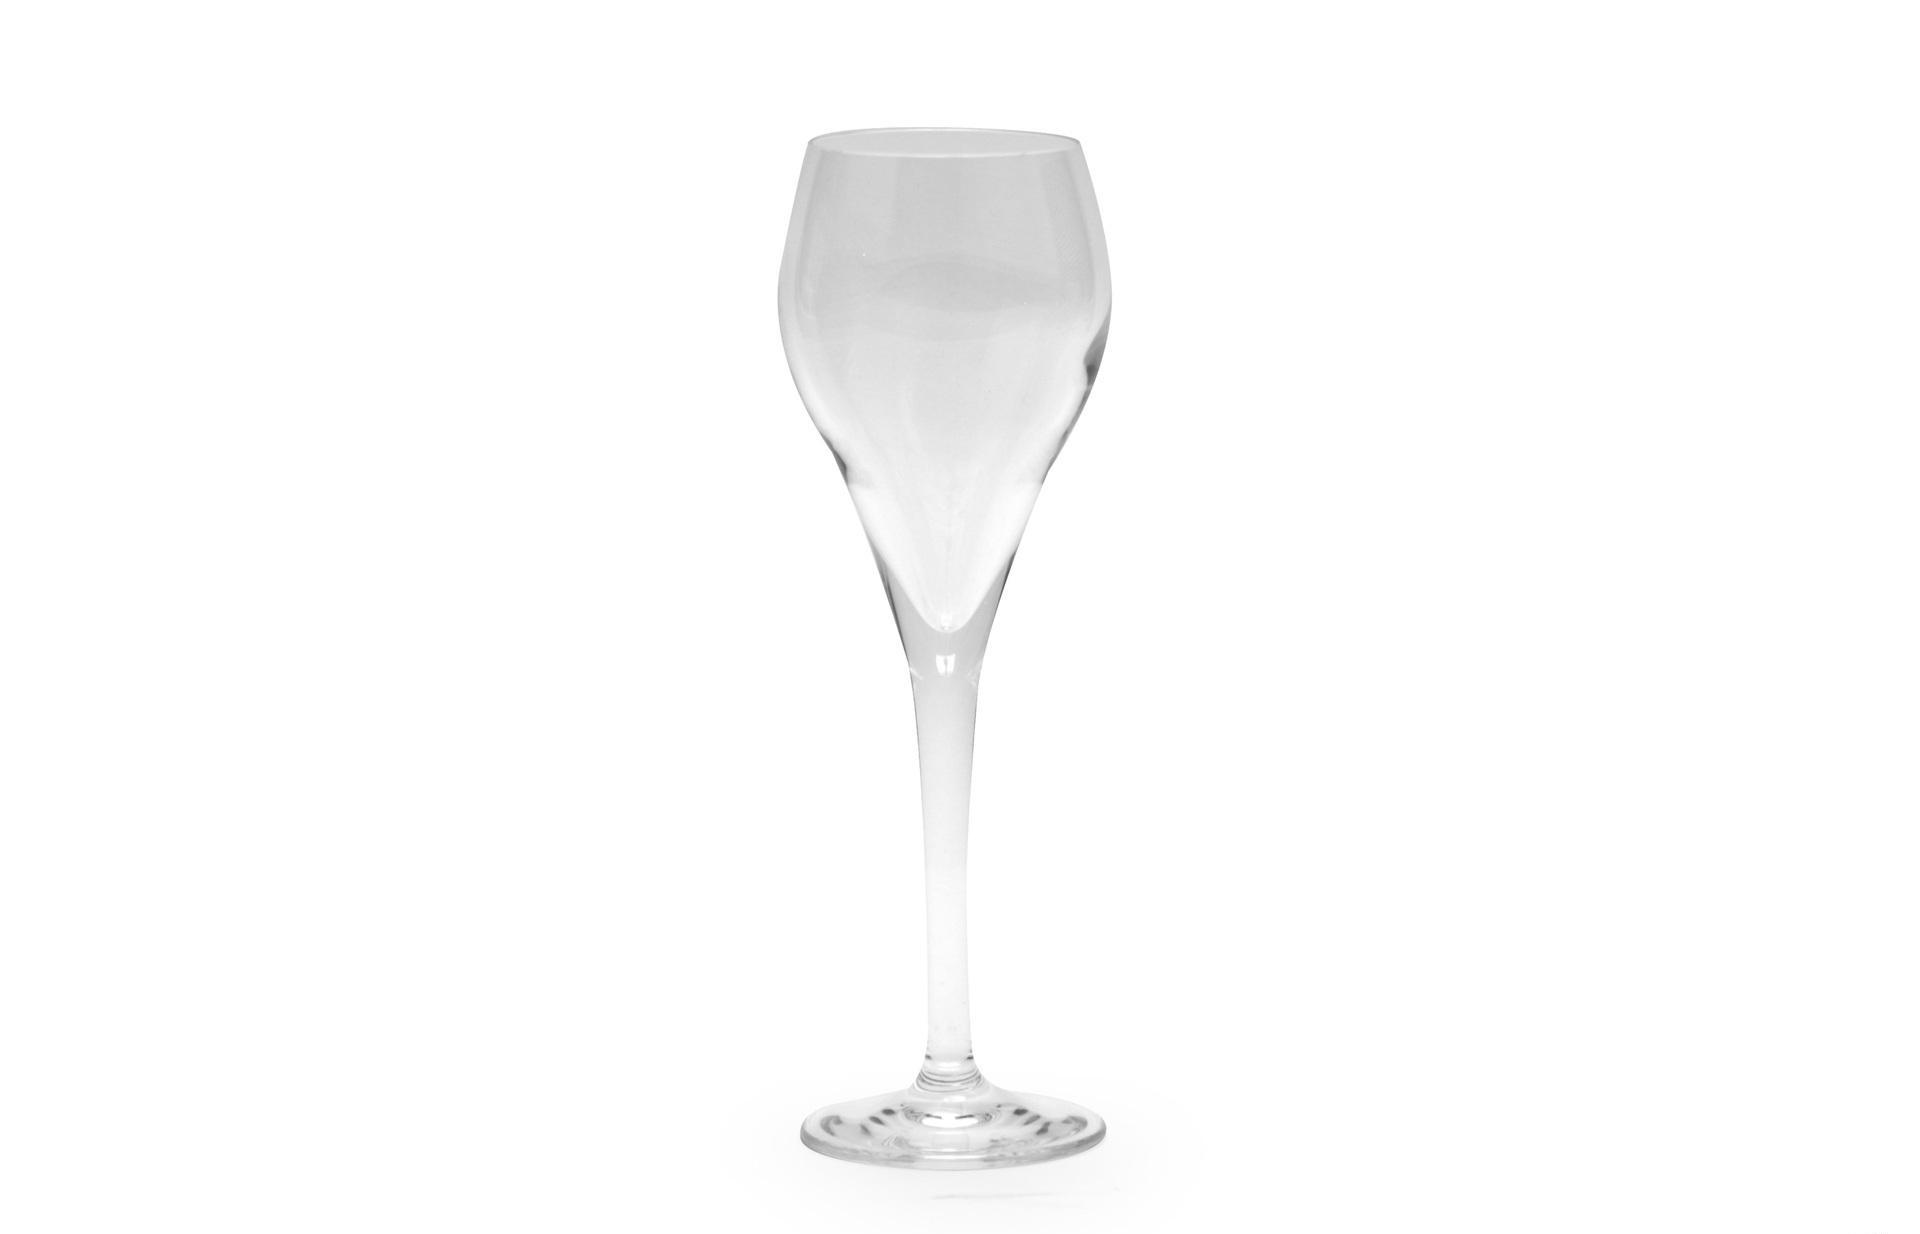 DAC Forniture - Set 6 pz Bicchiere Brillante colorati - Dof- Rcr